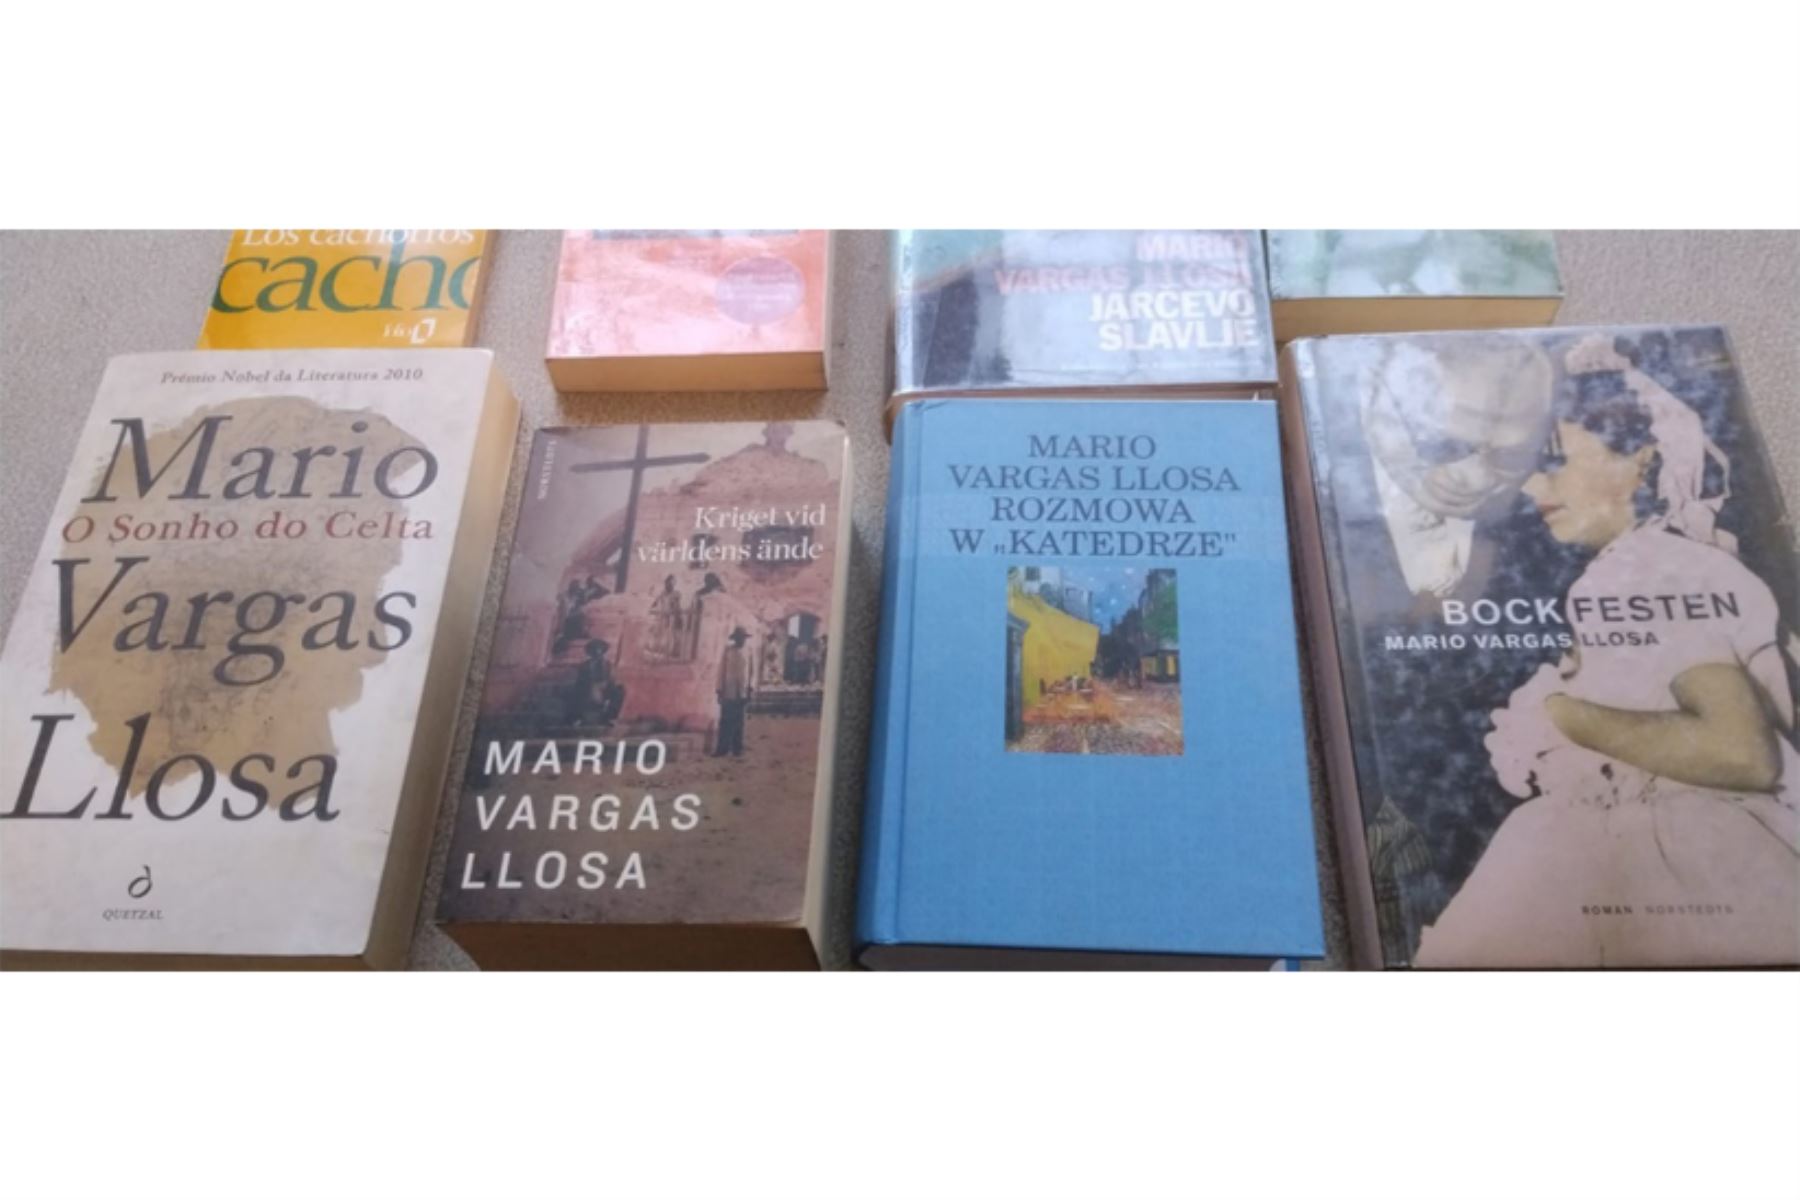 Exposición en la Biblioteca Regional Mario Vargas Llosa se podrá visitar gratuitamente de 08:00 a 18:00 horas durante noviembre. Foto: ANDINA/Difusión